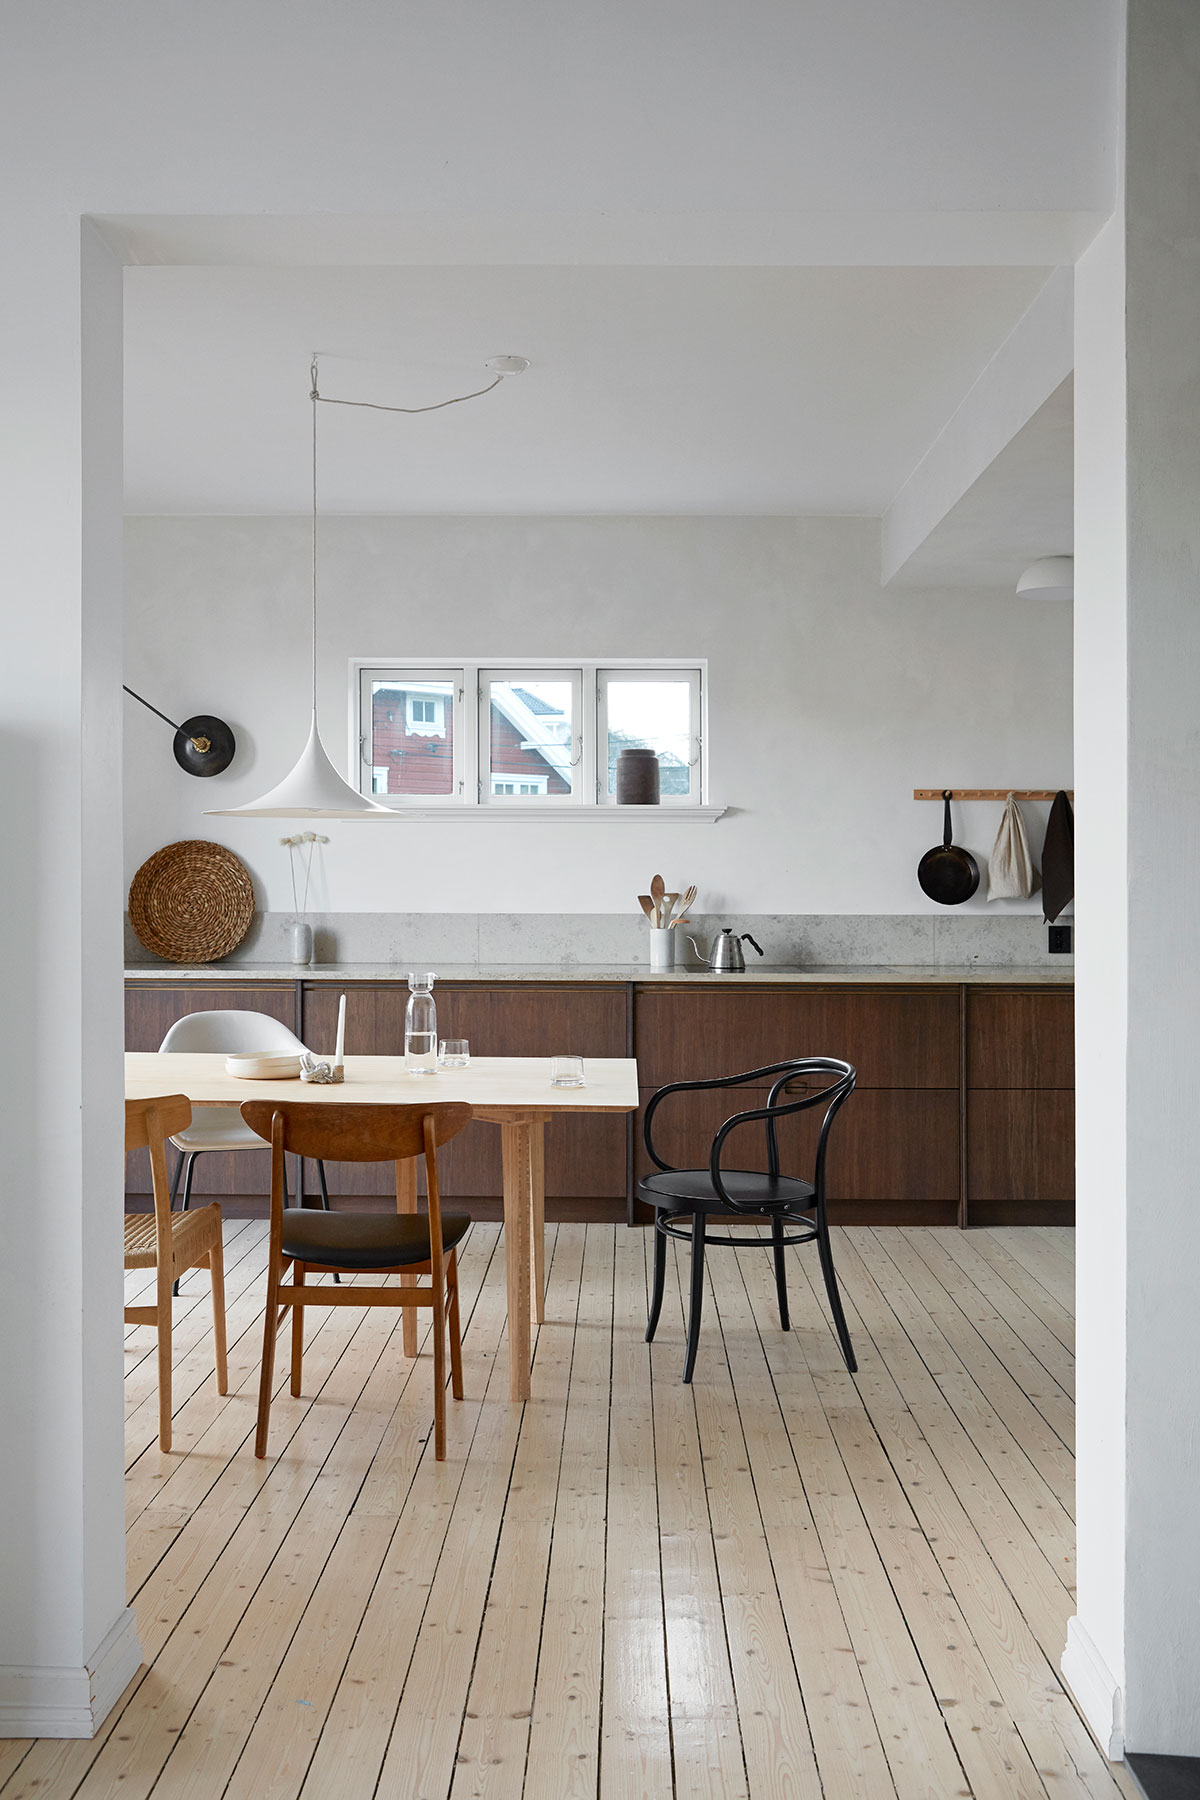 Спокойный и элегантный интерьер дома семьи дизайнеров в Норвегии